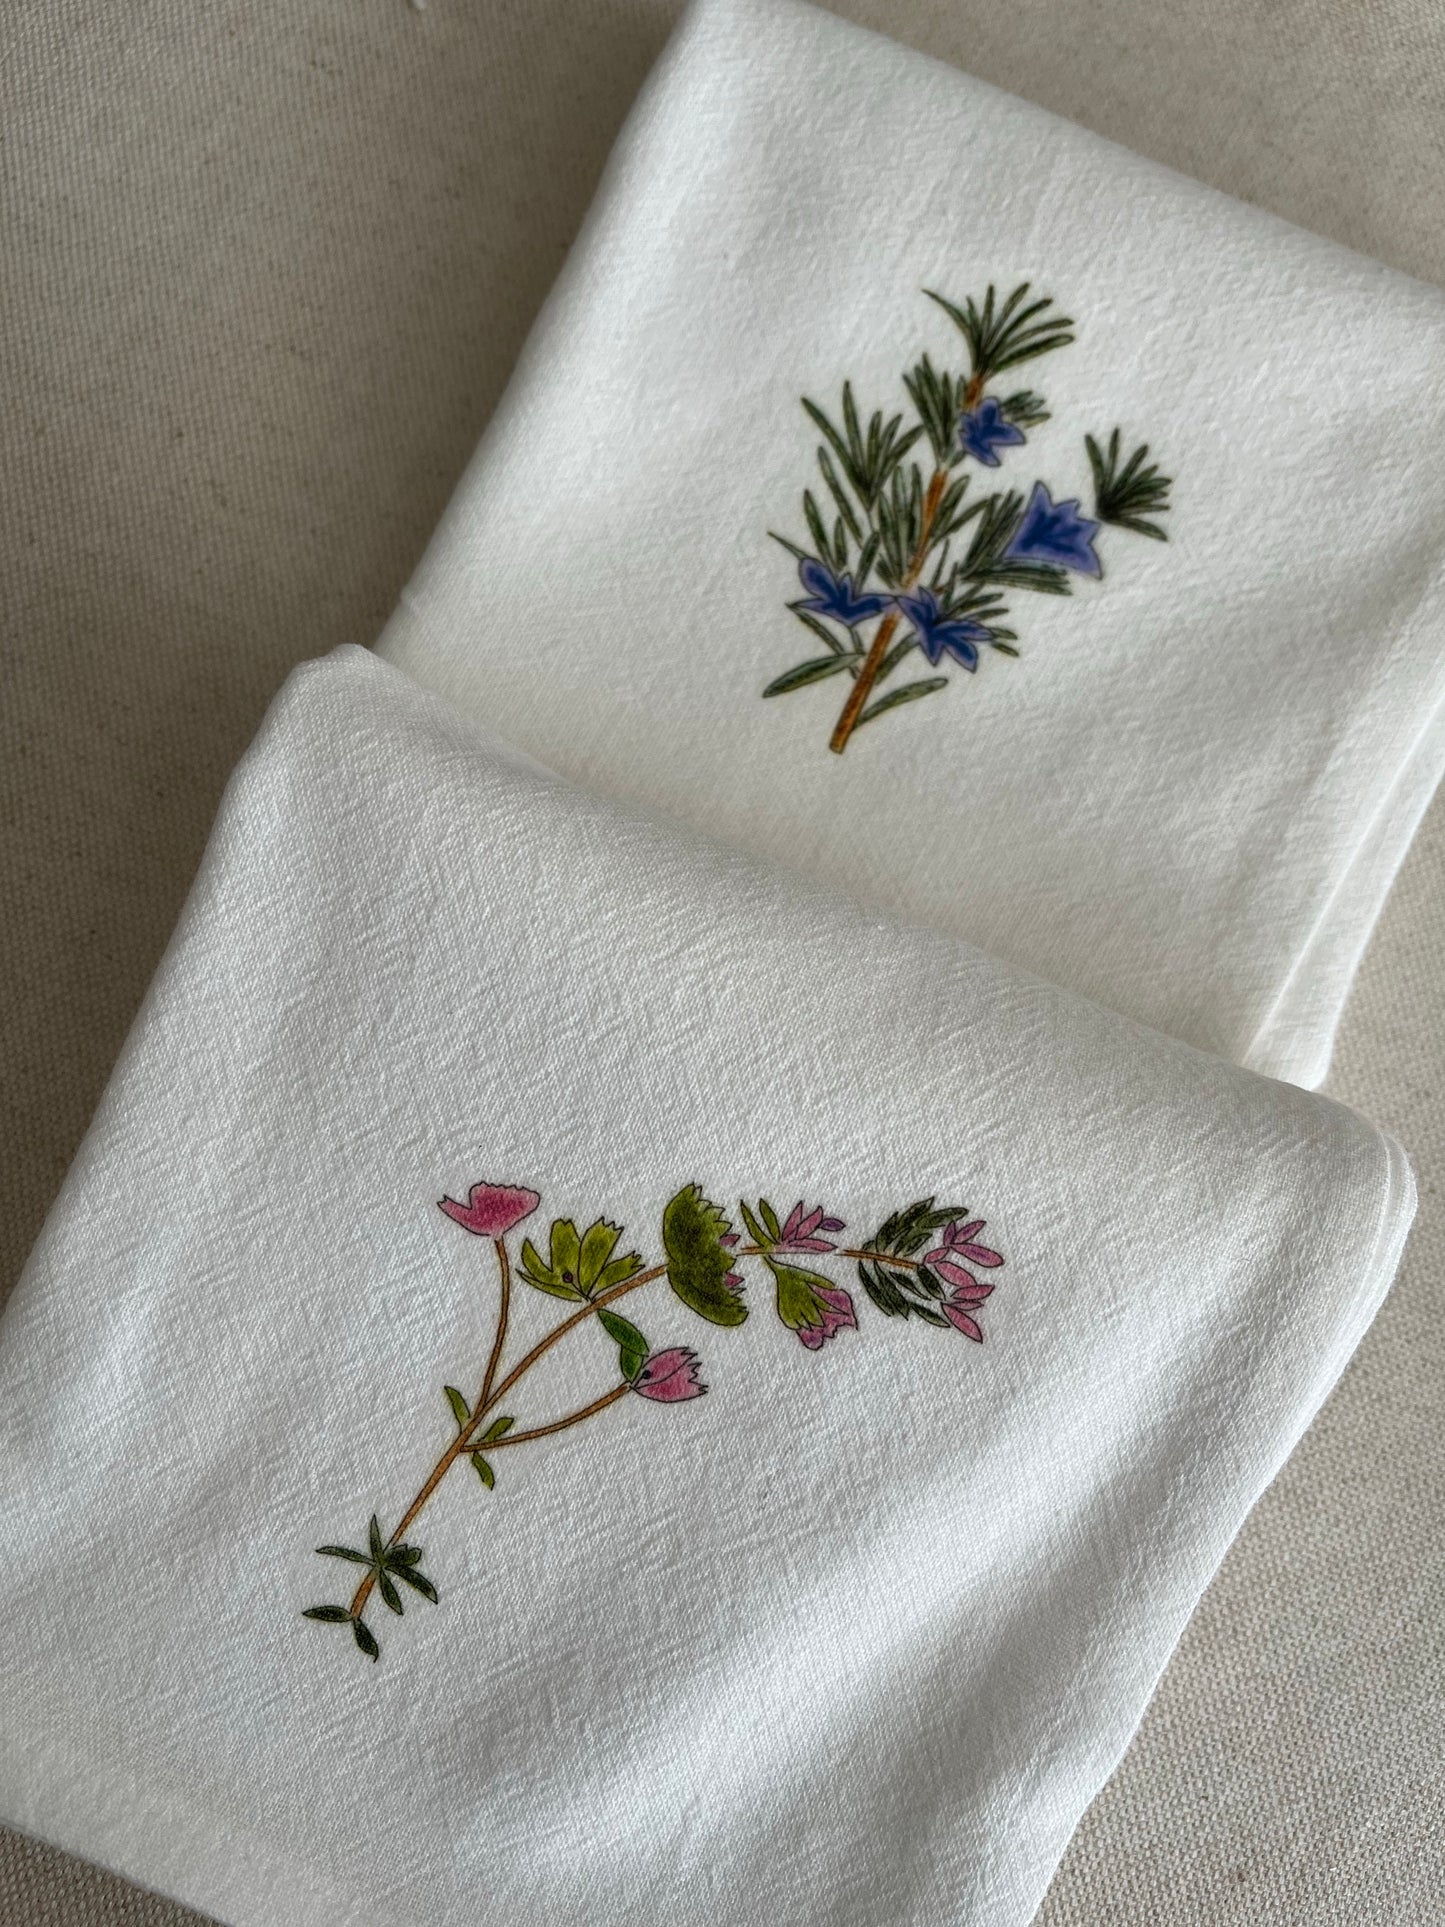 Rosemary & Thyme Botanical Cotton Napkin Set.